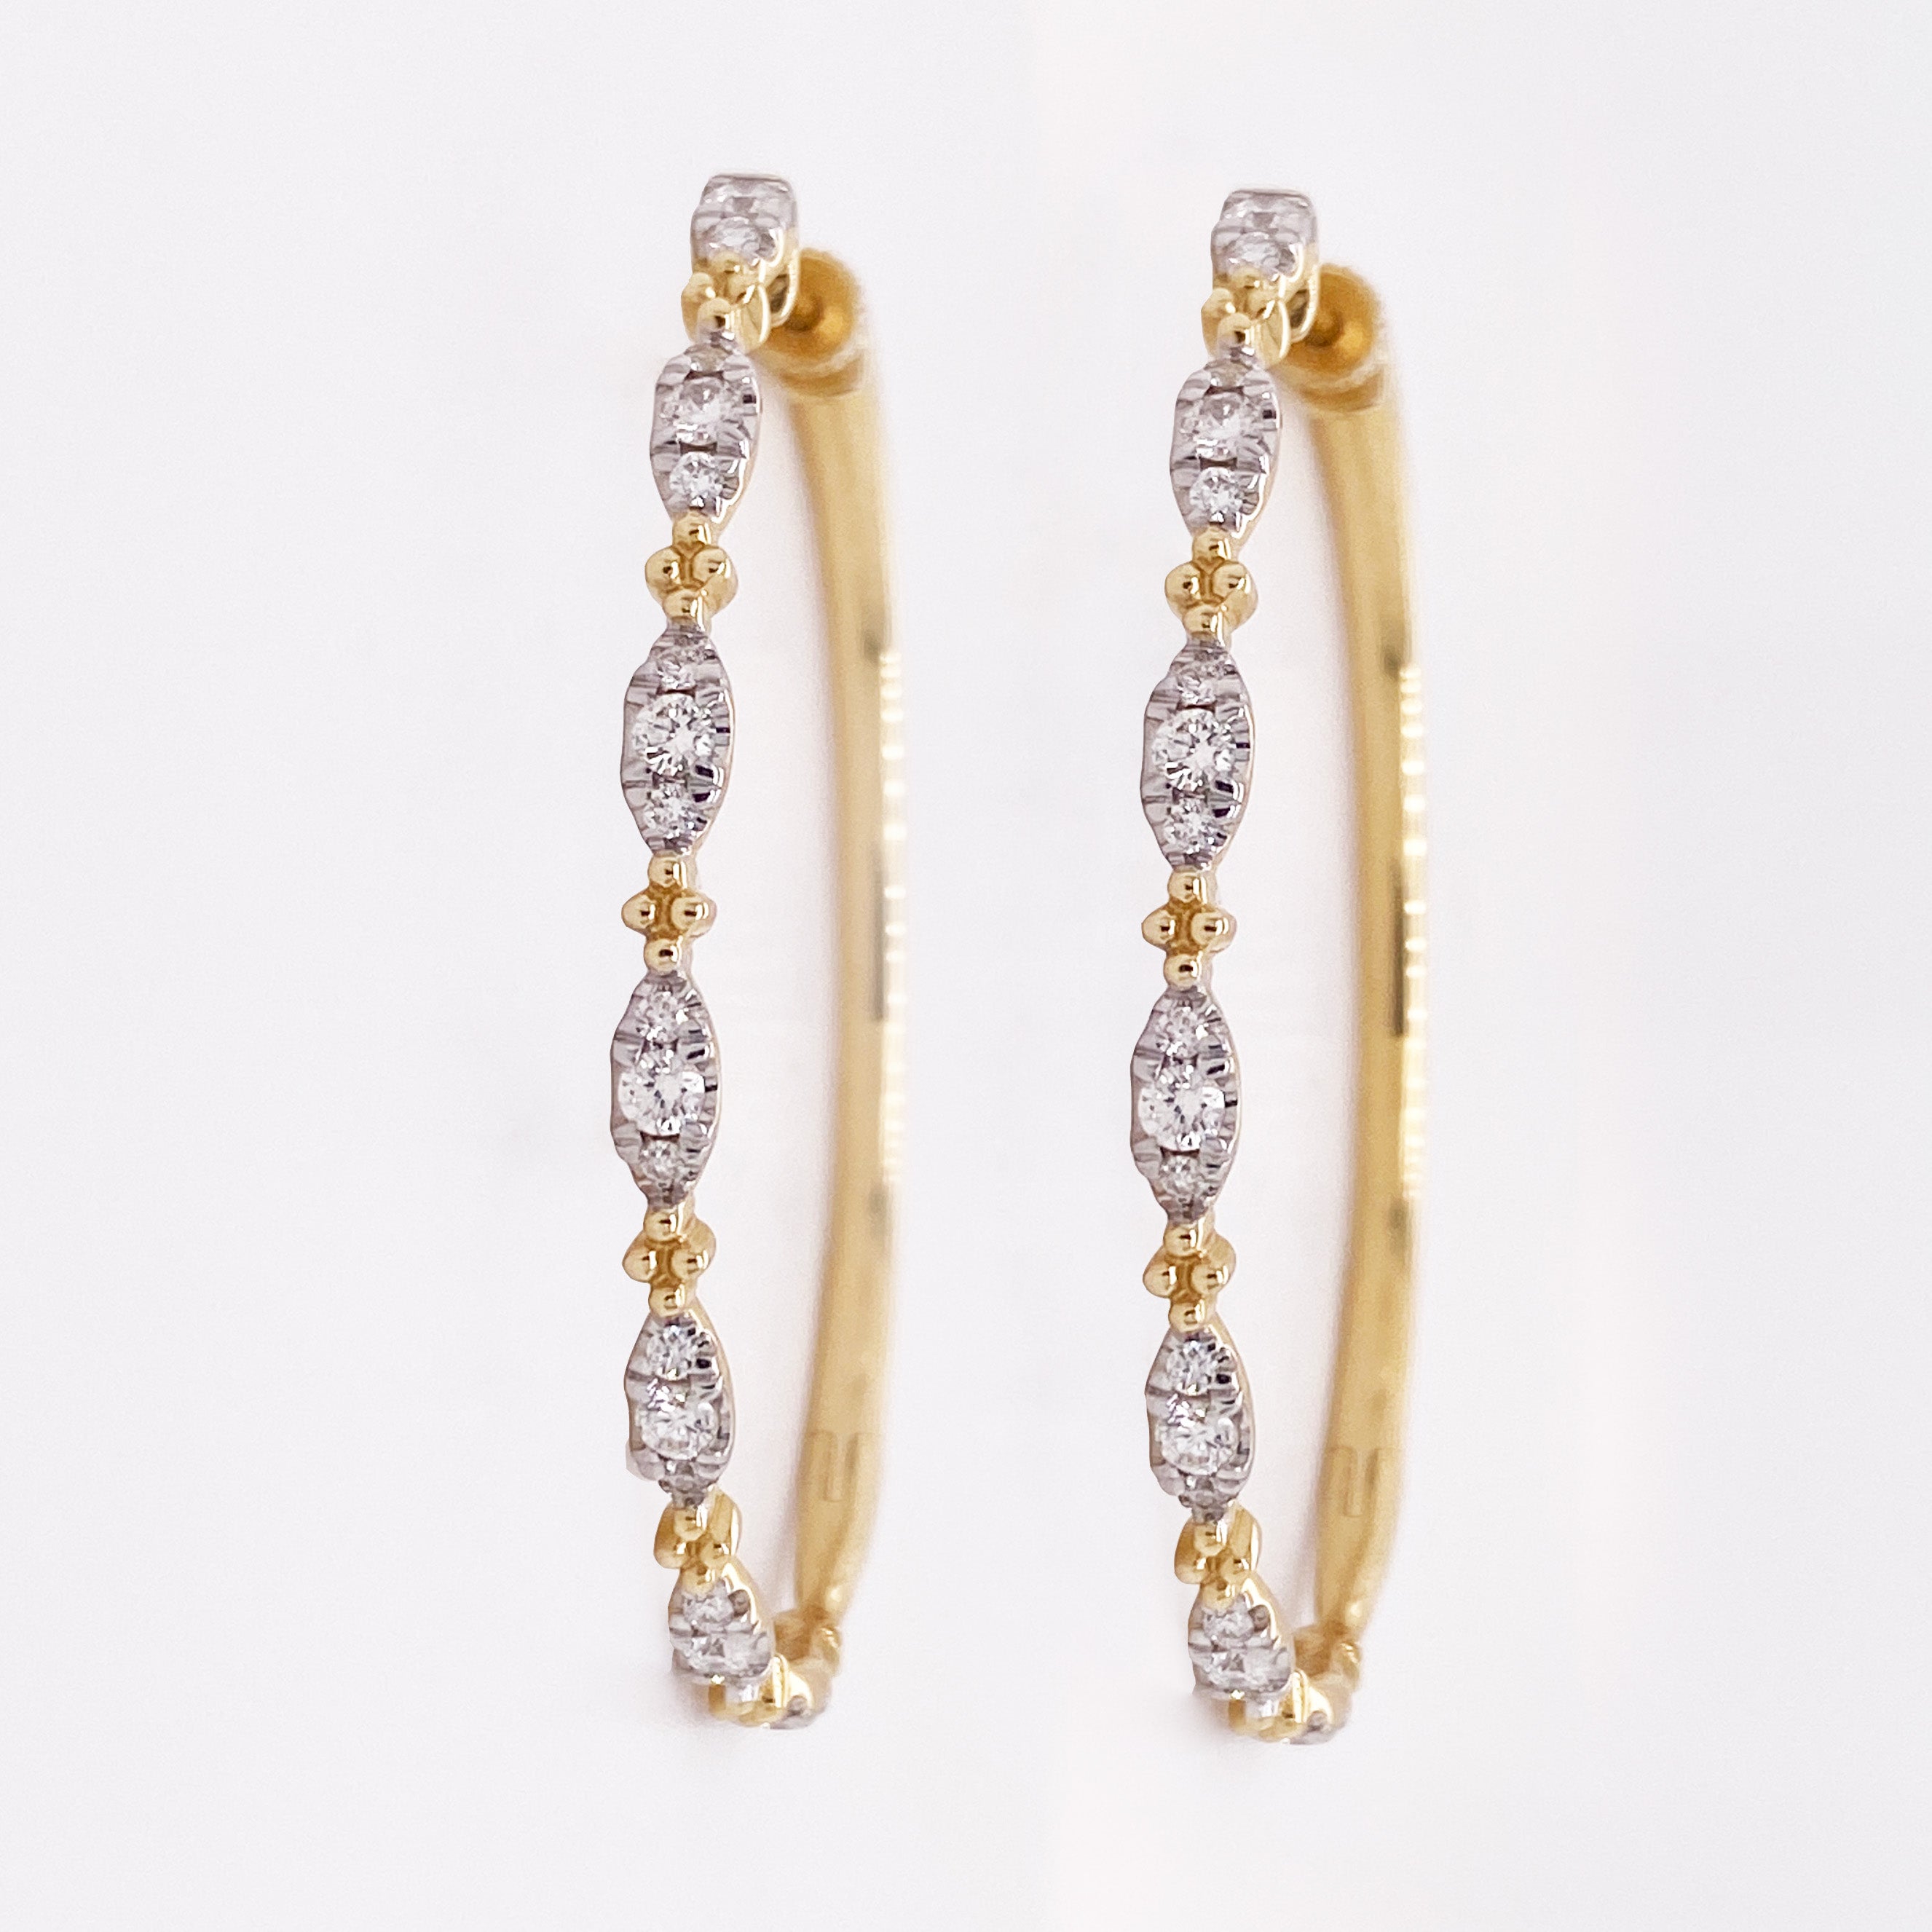 Ces anneaux bicolores Gabriel & Co. sont magnifiques et tellement faciles à porter ! Des diamants en or blanc alternent avec de petites grappes quadrilobées en or jaune sur ces ovales de 1,57 pouce de long pour un look contemporain sur un modèle de